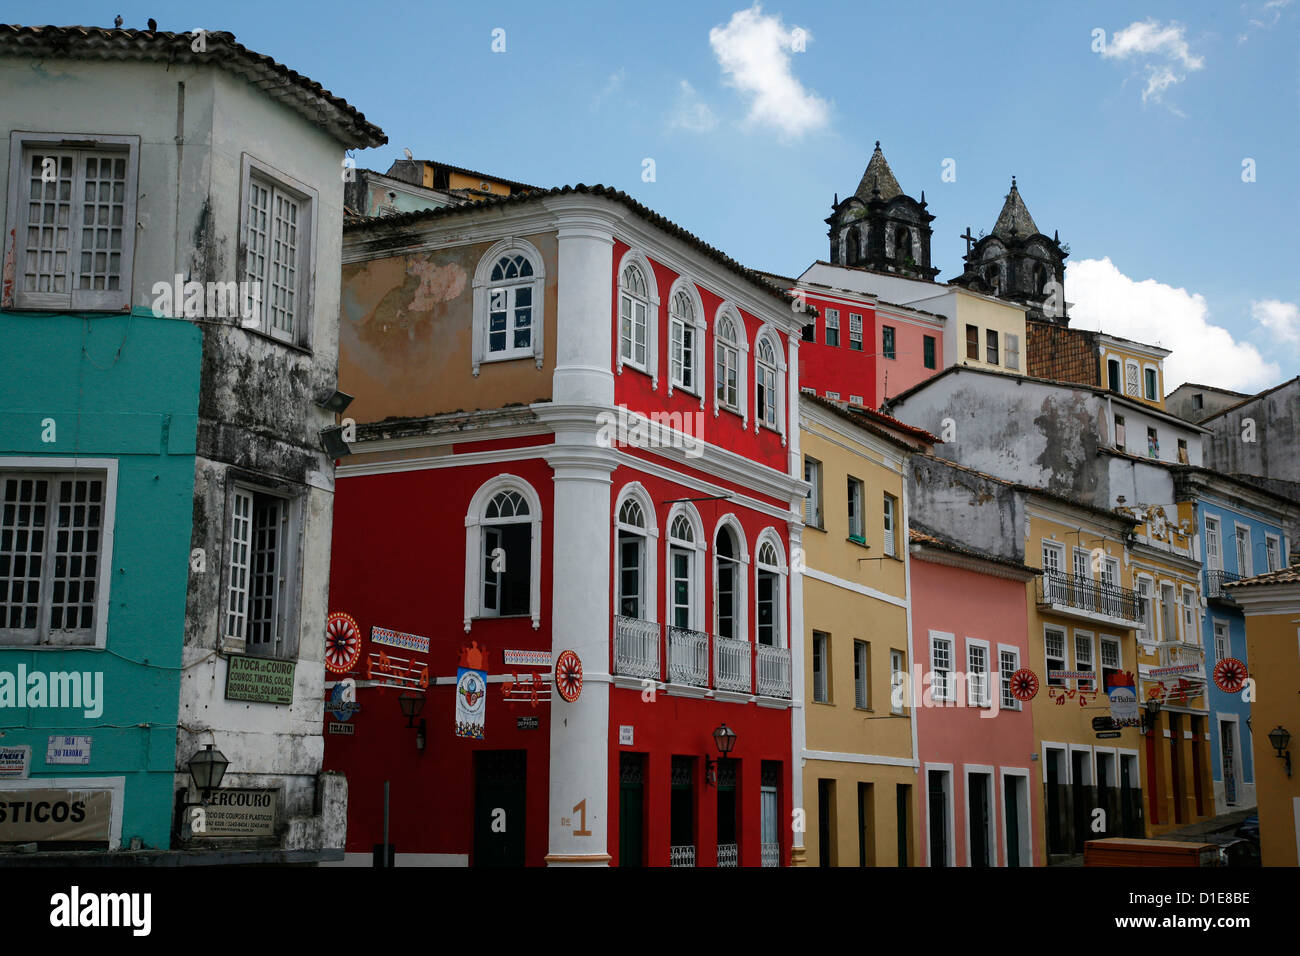 Rues pavées et de l'architecture coloniale, Largo de Pelourinho, Salvador, Bahia, Brésil, Amérique du Sud Banque D'Images